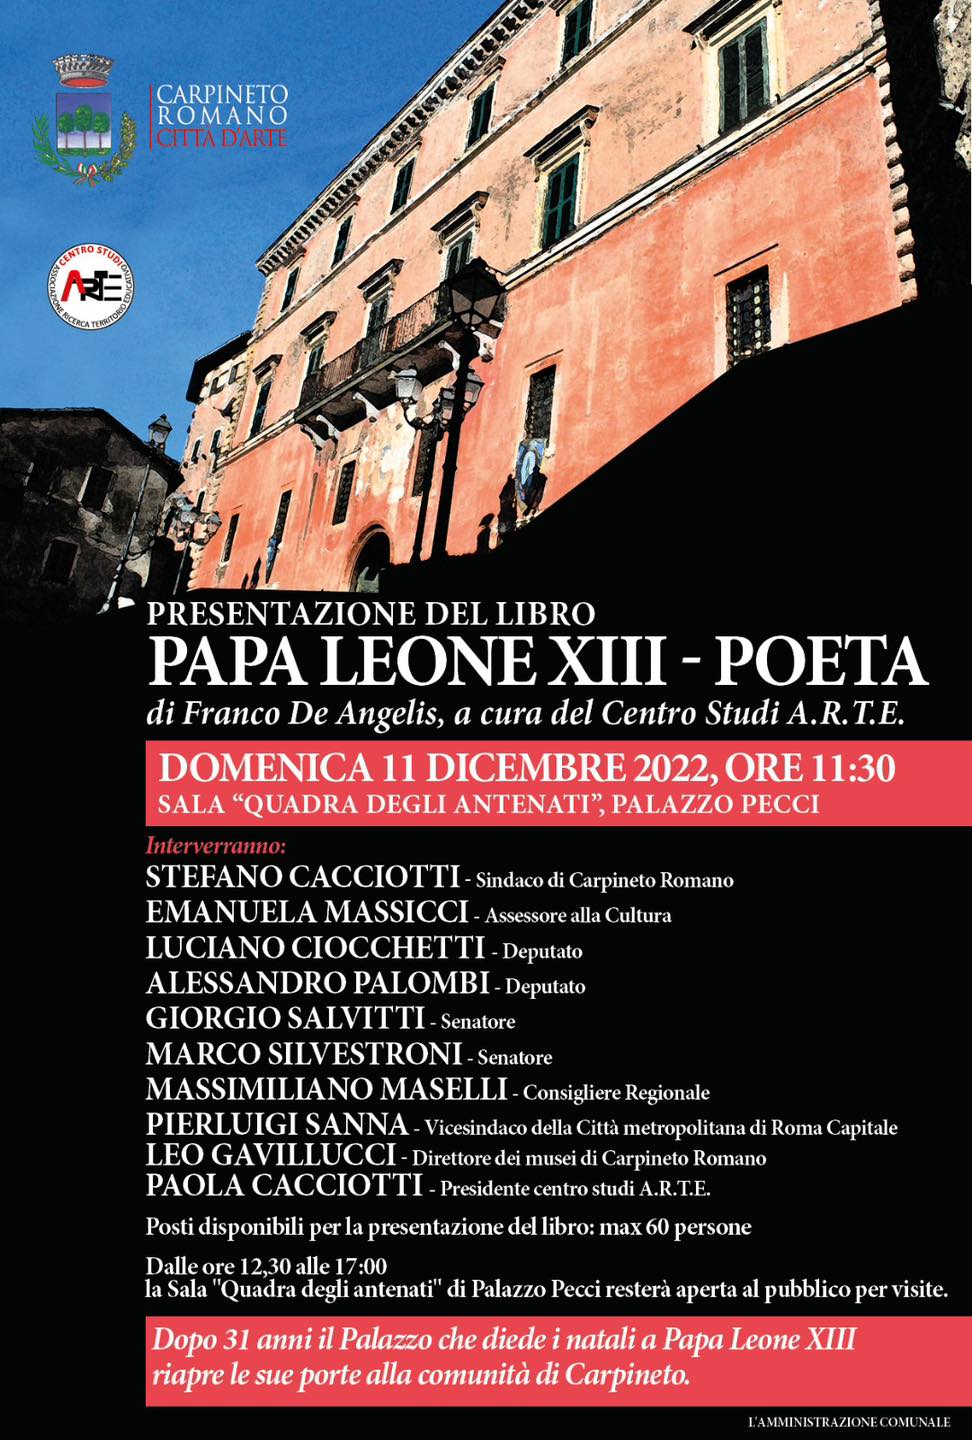 Carpineto Romano: Presentazione del libro Papa Leone XIII-Poeta @ Carpineto Romano